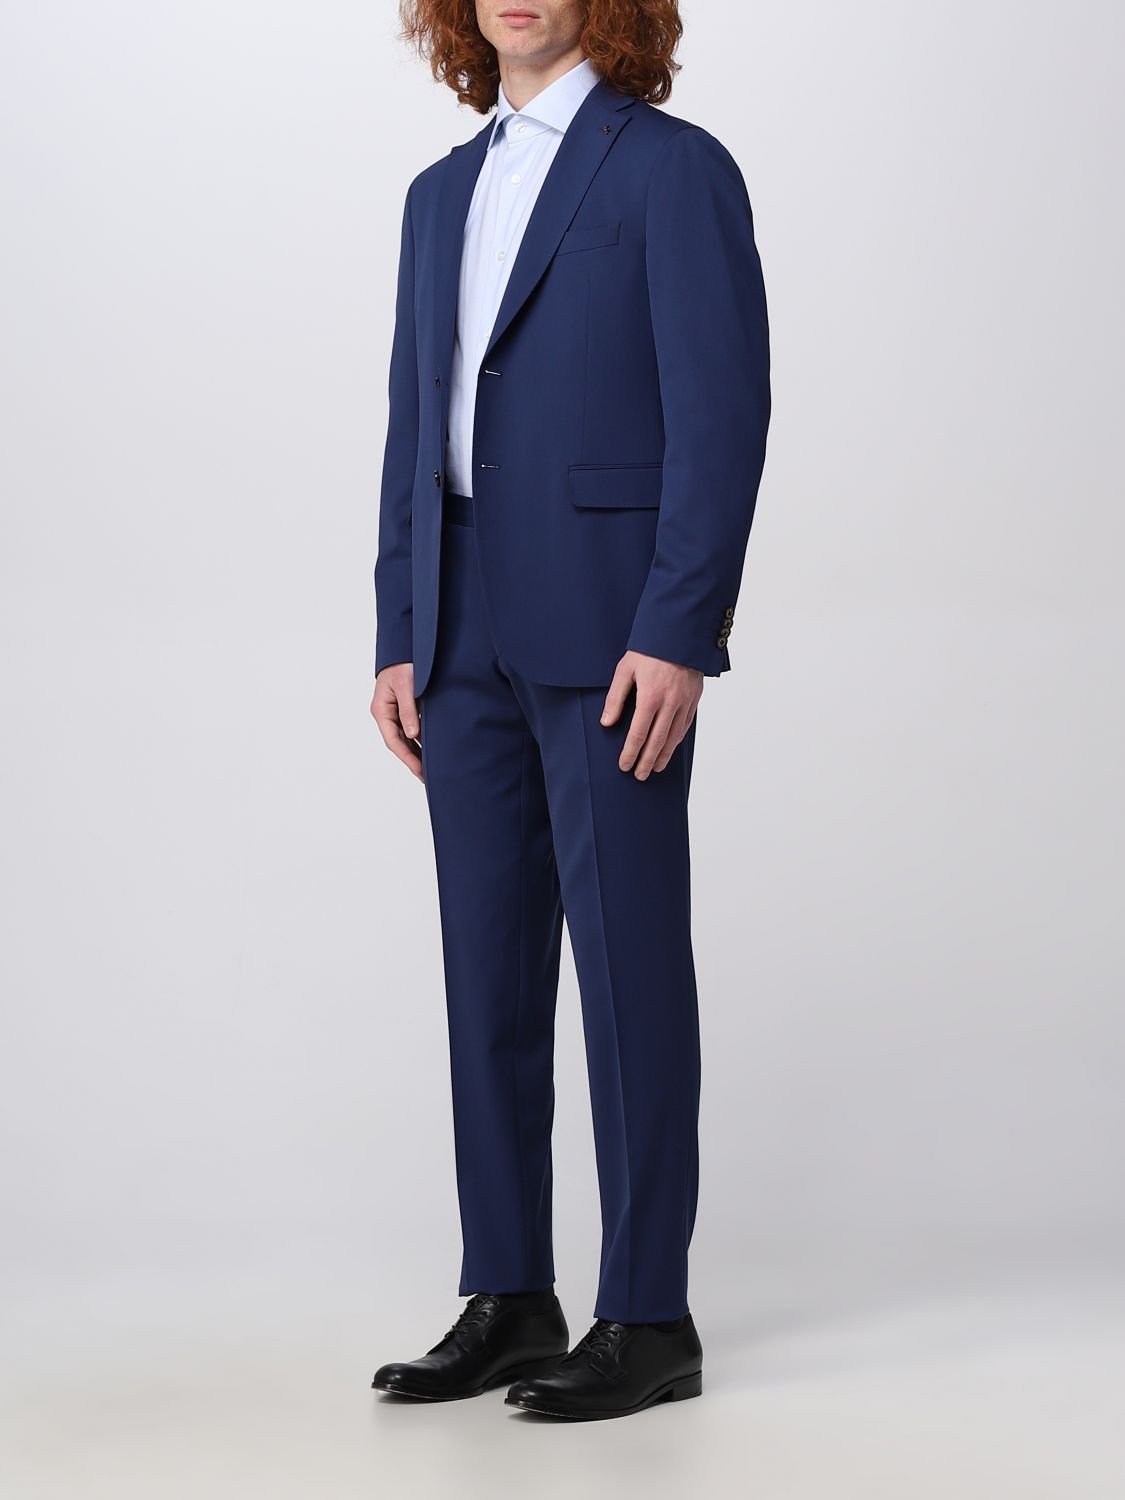 MICHAEL KORS: suit for man - Blue | Michael Kors suit MD0MD91257 online on  